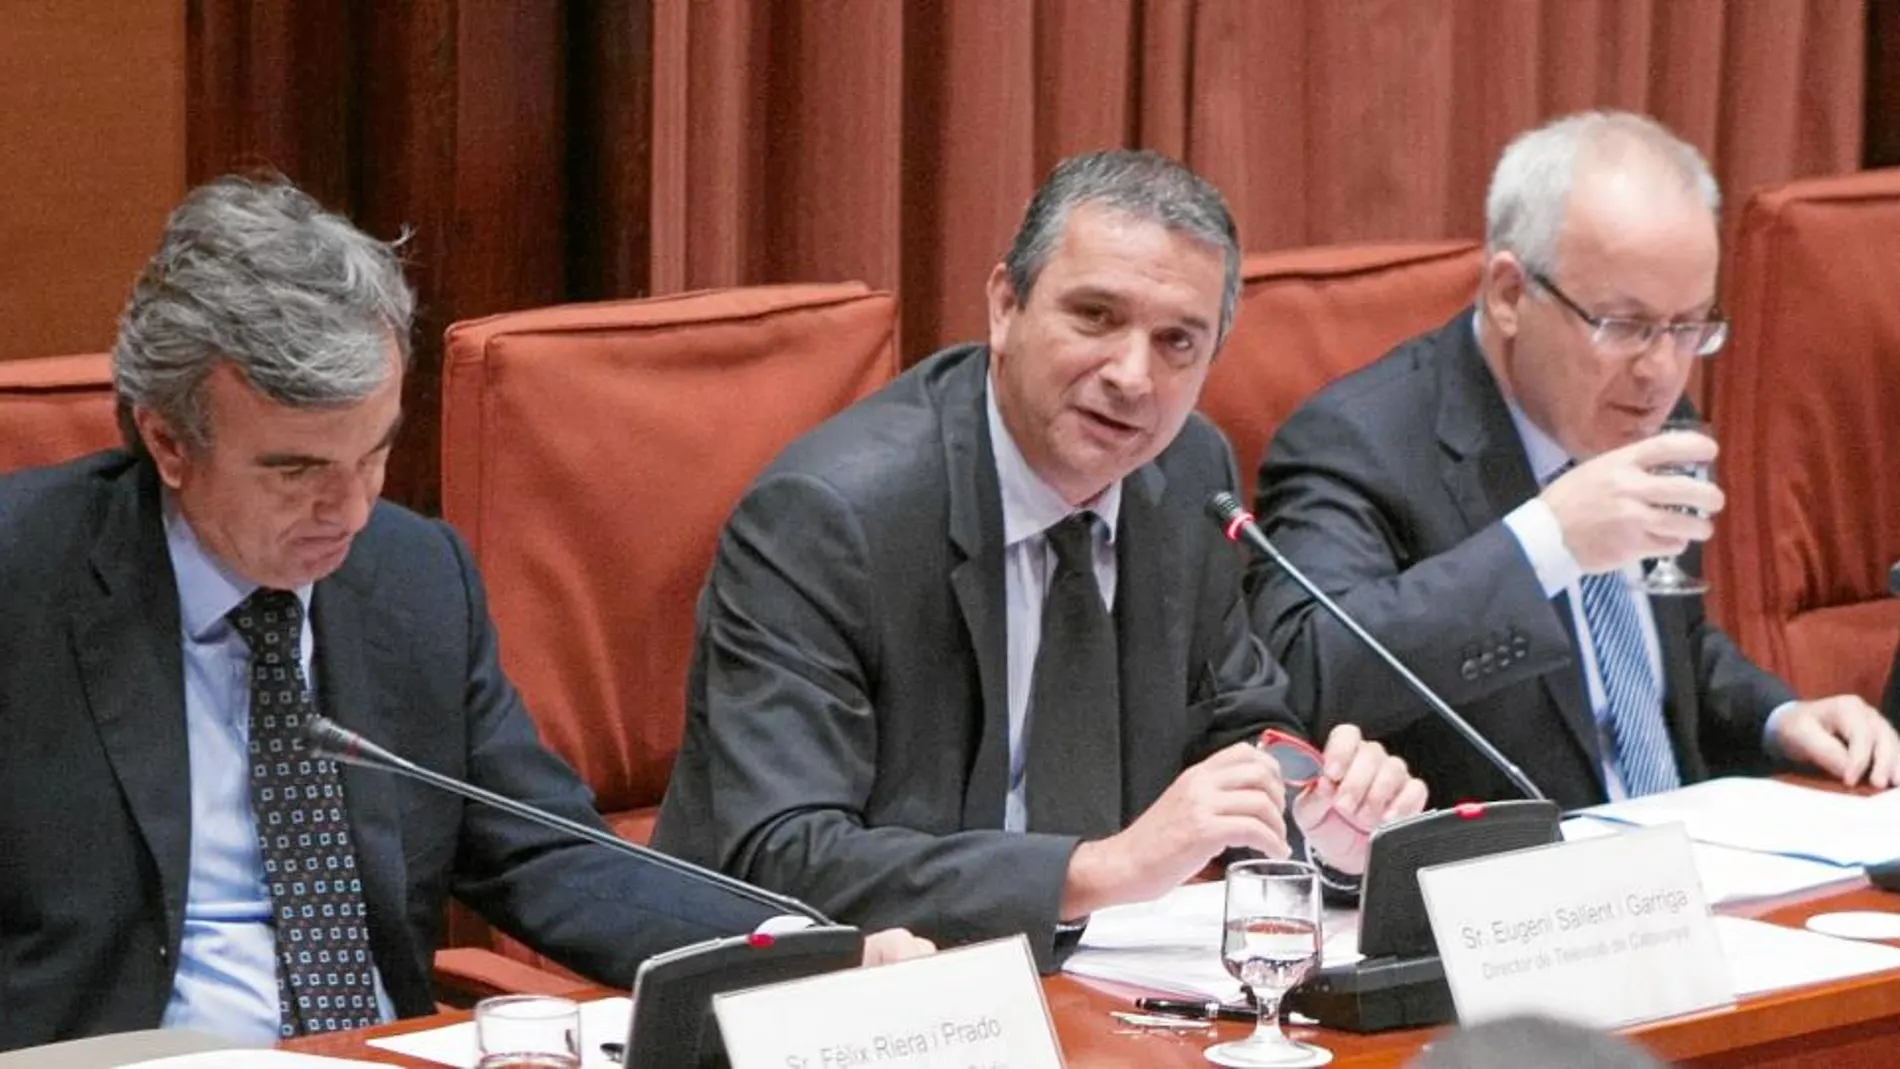 Fèlix Riera (Catalunya Ràdio), Eugeni Sallent (TV3) y Brauli Duart en una comparecencia en el Parlament